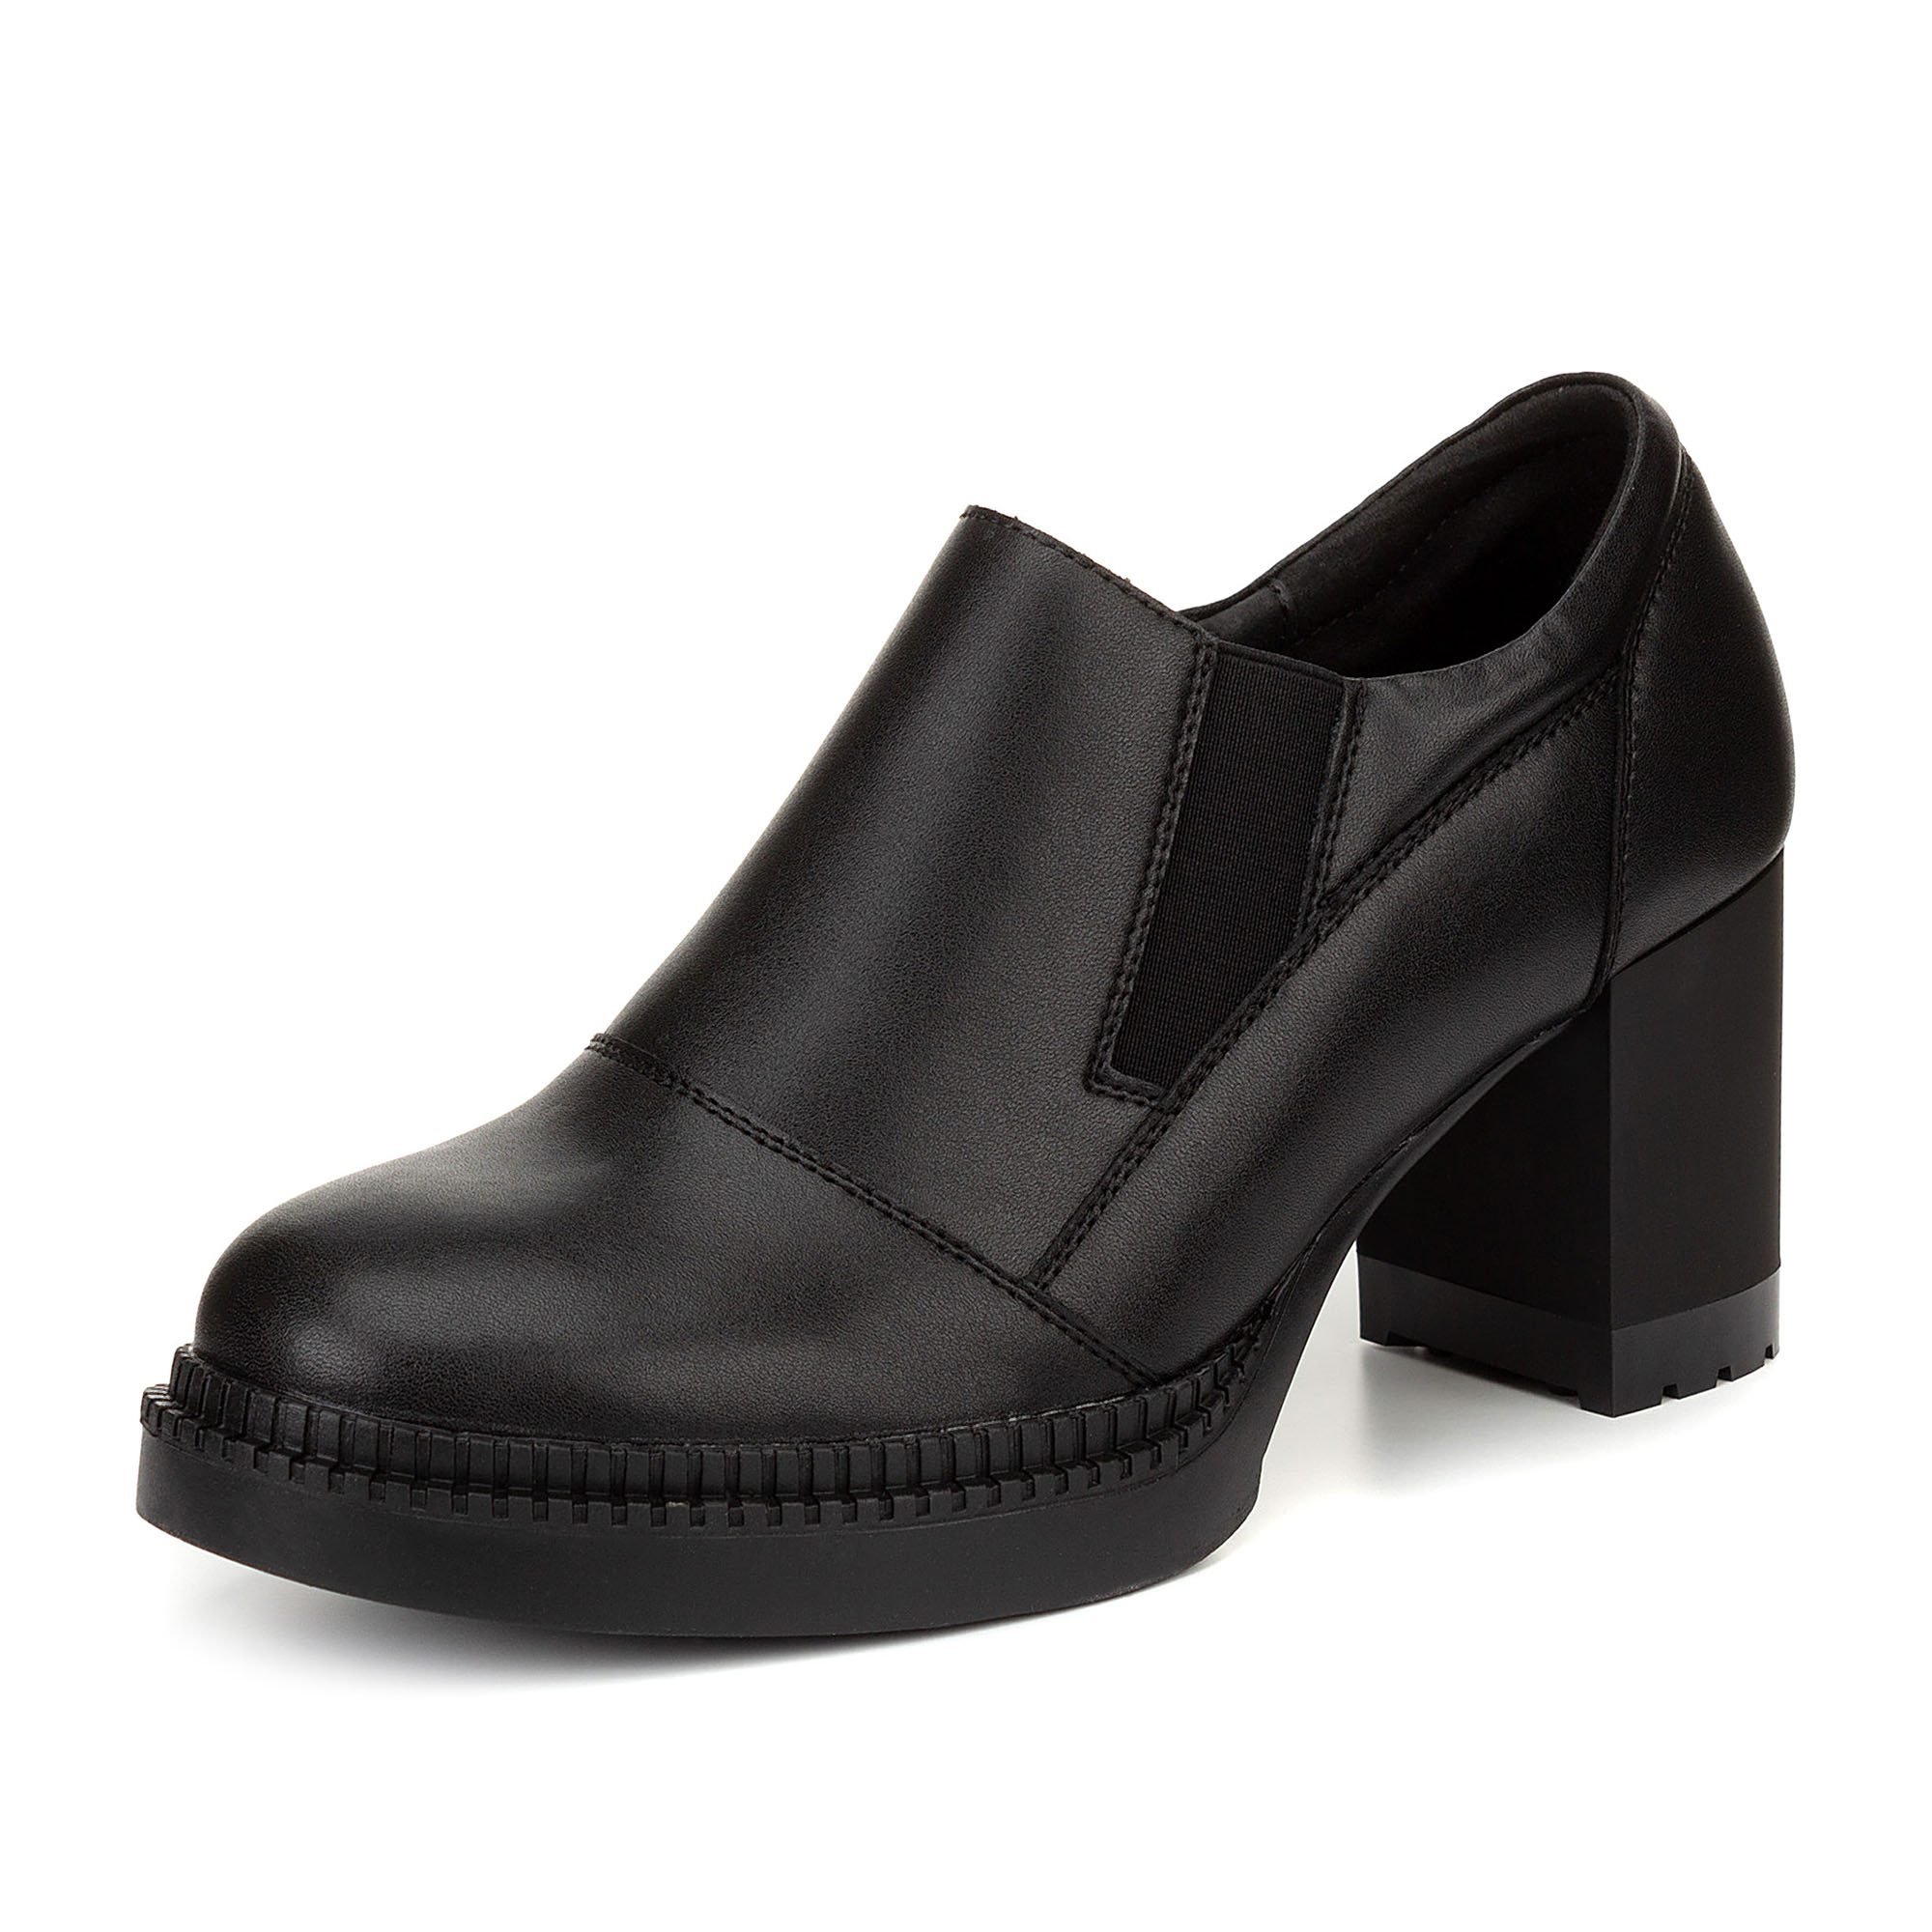 Купить Туфли закрытые женские ZENDEN 77-22WA-020VK в интернет-магазине  Zenden